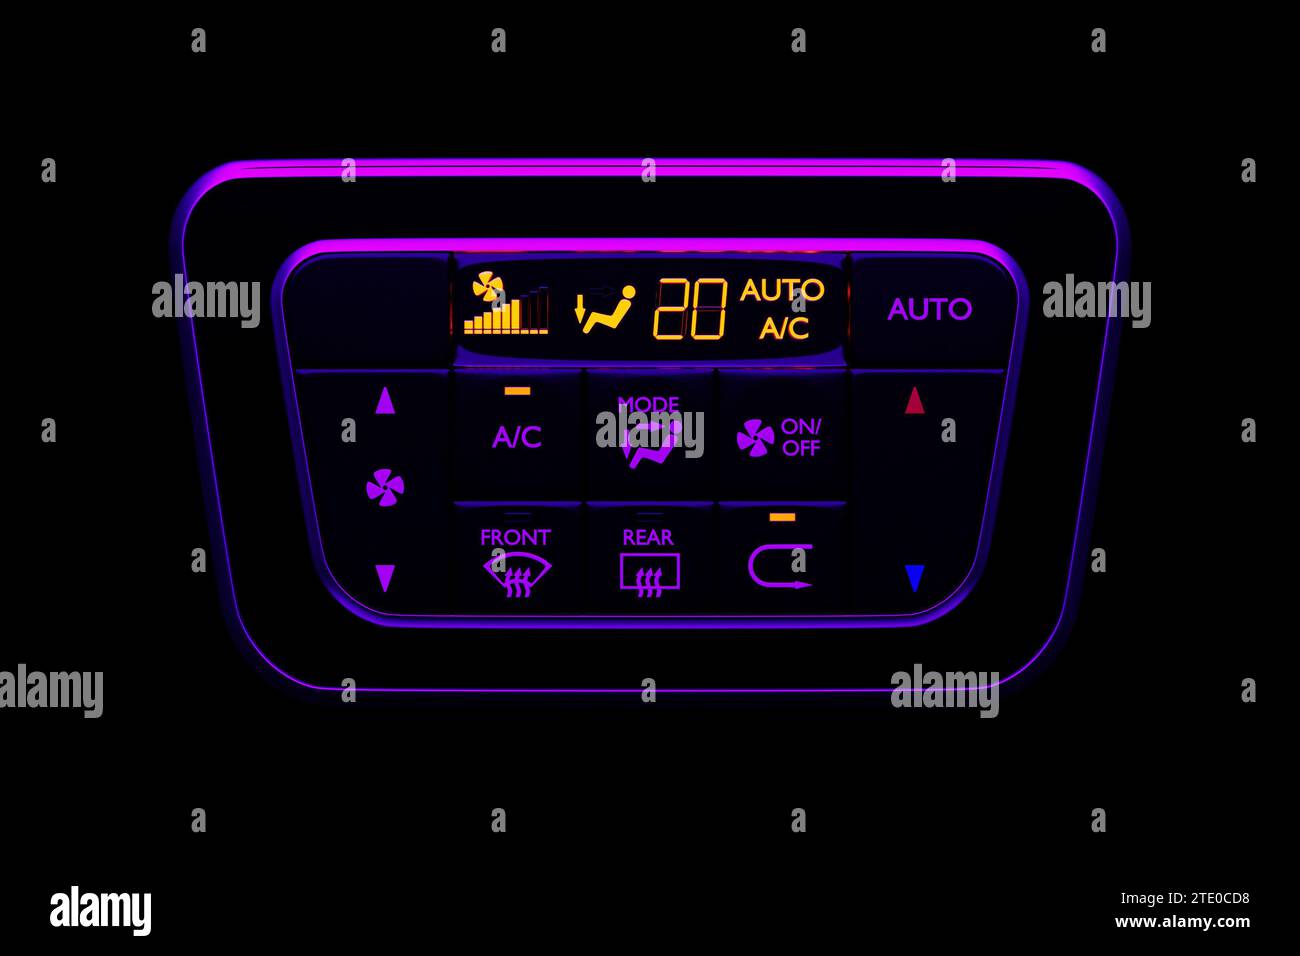 Botones para encender el aire acondicionado del coche en el panel de control de climatización, ilustración 3D Foto de stock